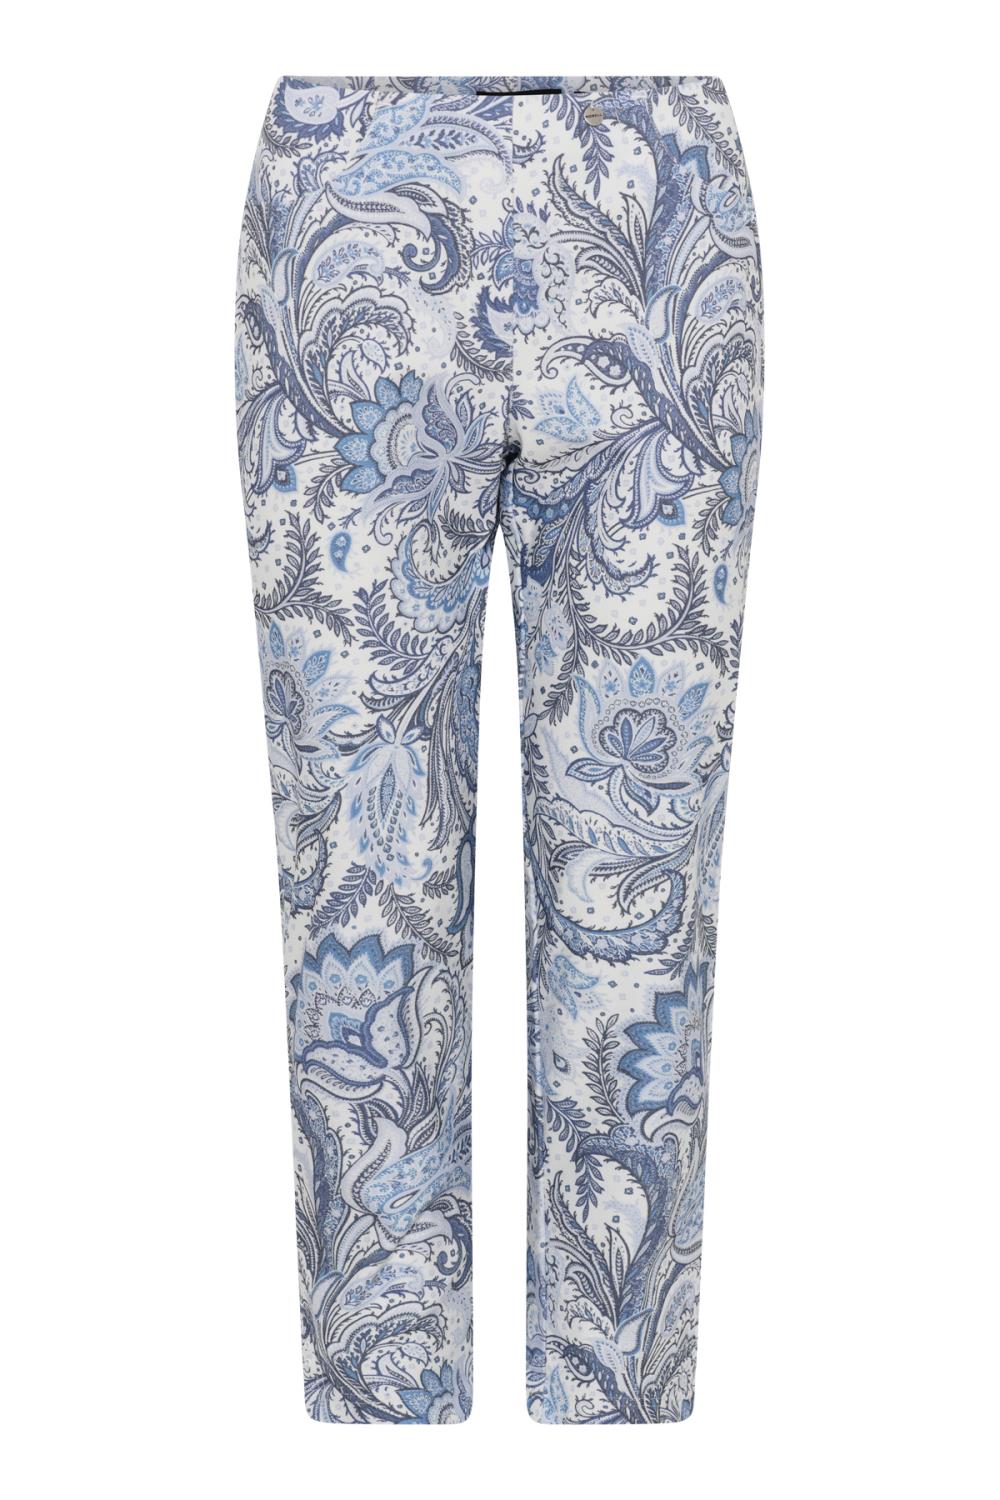 Robell Bella bukse, 68 cm, blåmønstret